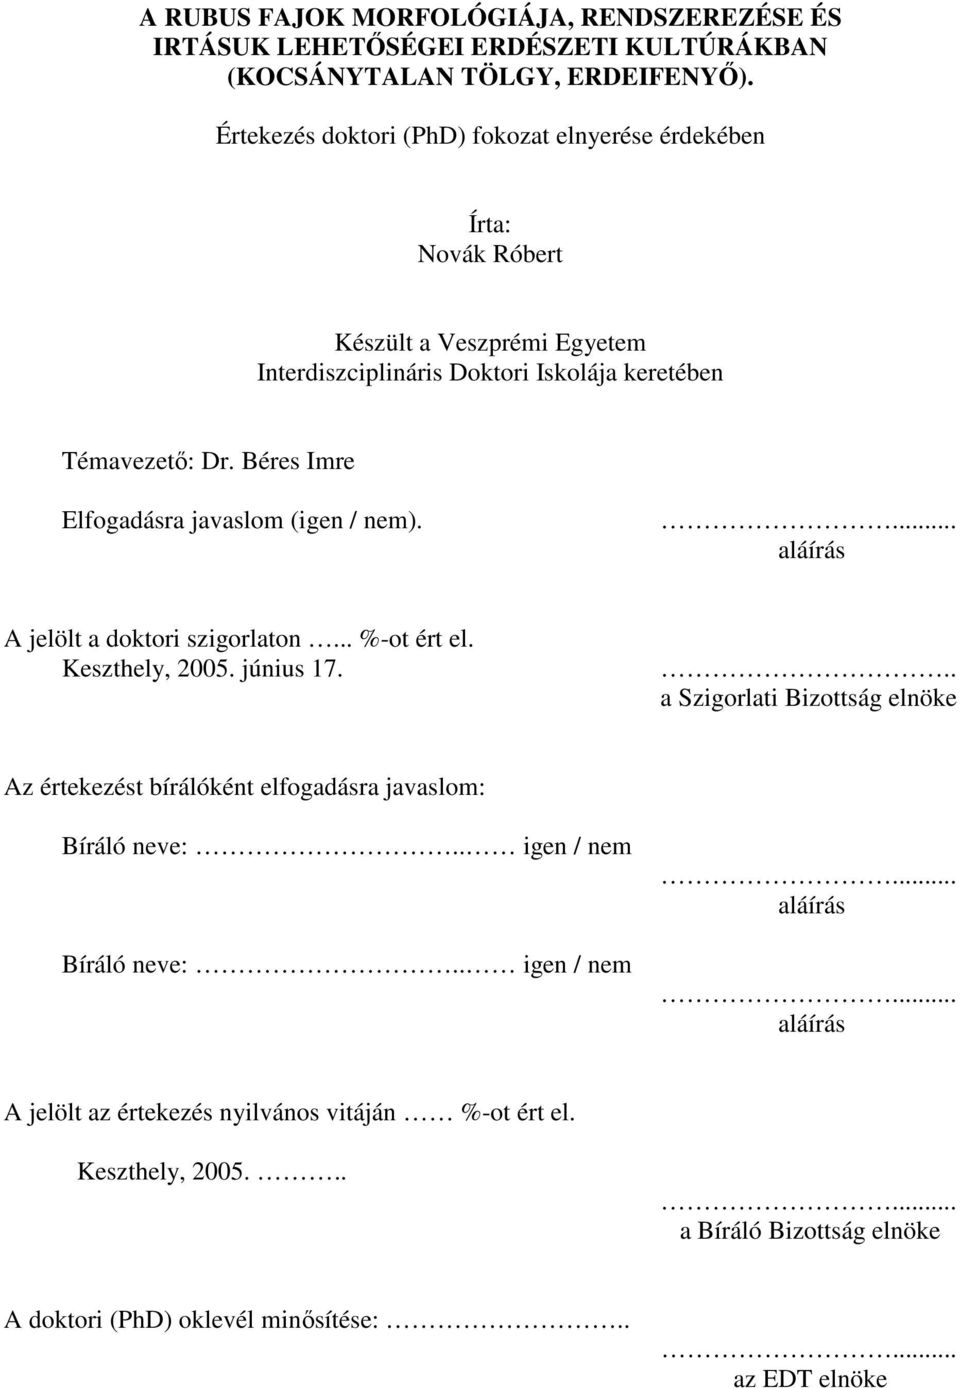 Béres Imre Elfogadásra javaslom (igen / nem).... aláírás A jelölt a doktori szigorlaton... %-ot ért el. Keszthely, 2005. június 17.